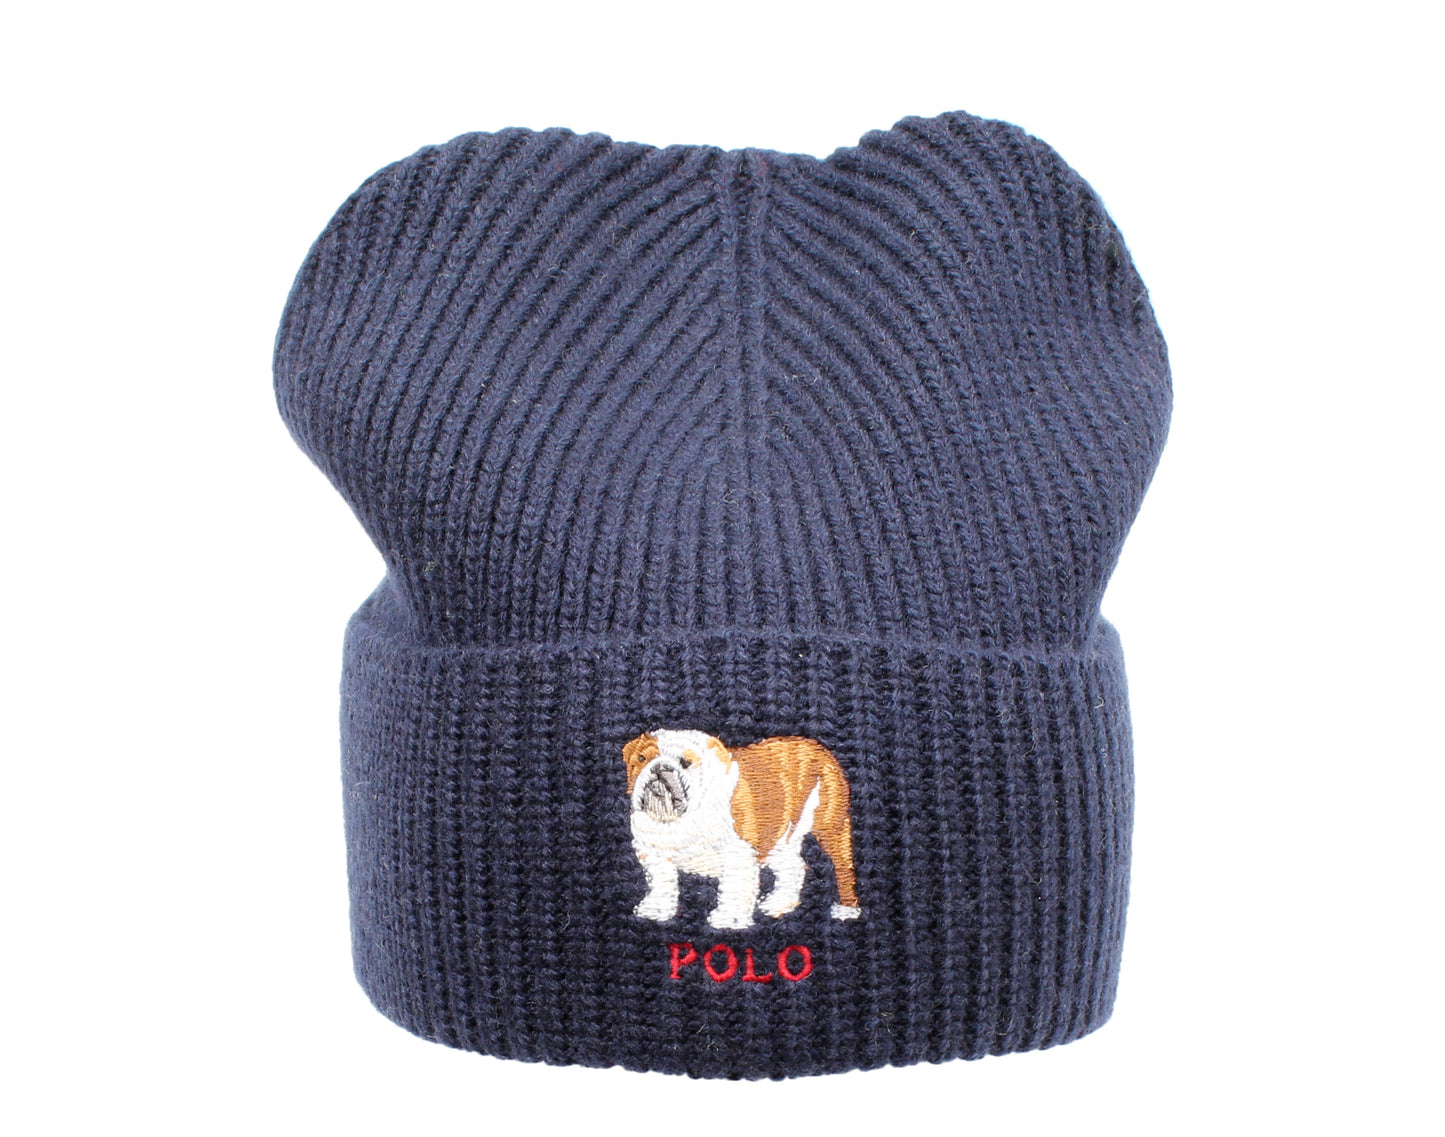 Polo Ralph Lauren English Bulldog Knit Cuffed Hat